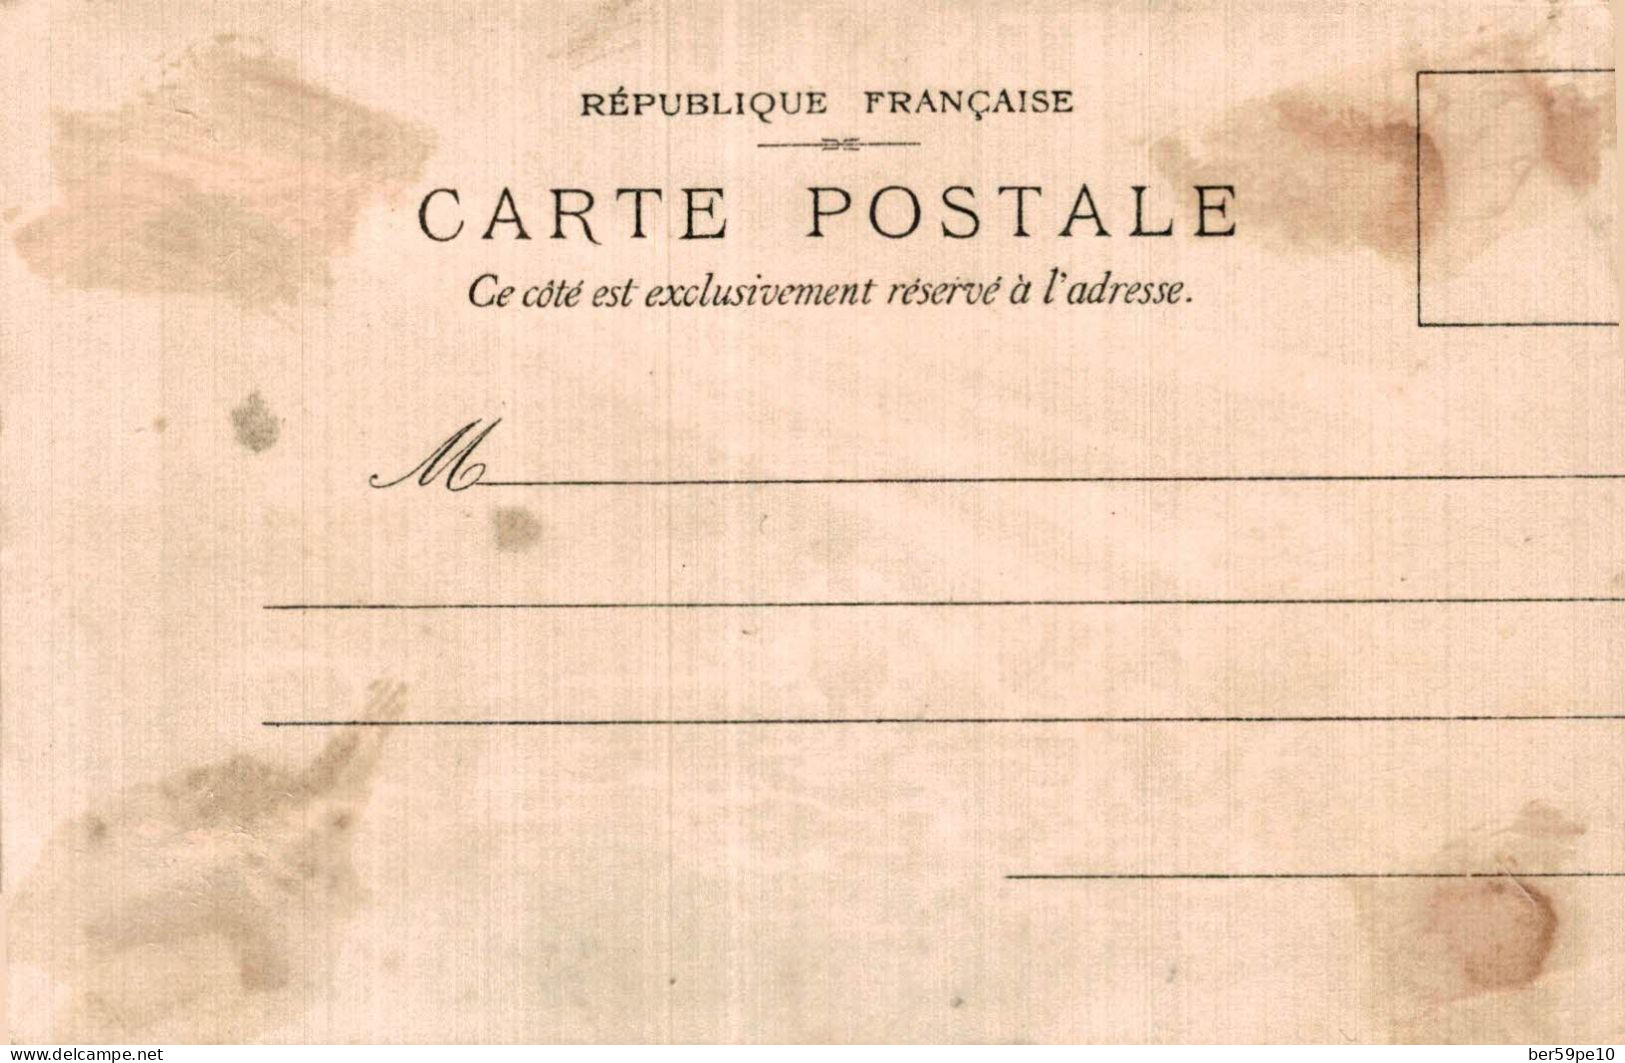 CHROMO BISCUITS LEFEVRE-UTILE GRAND PRIX PARIS 1900 CARTE TRANSPARENTE BIARRITZ - Lu